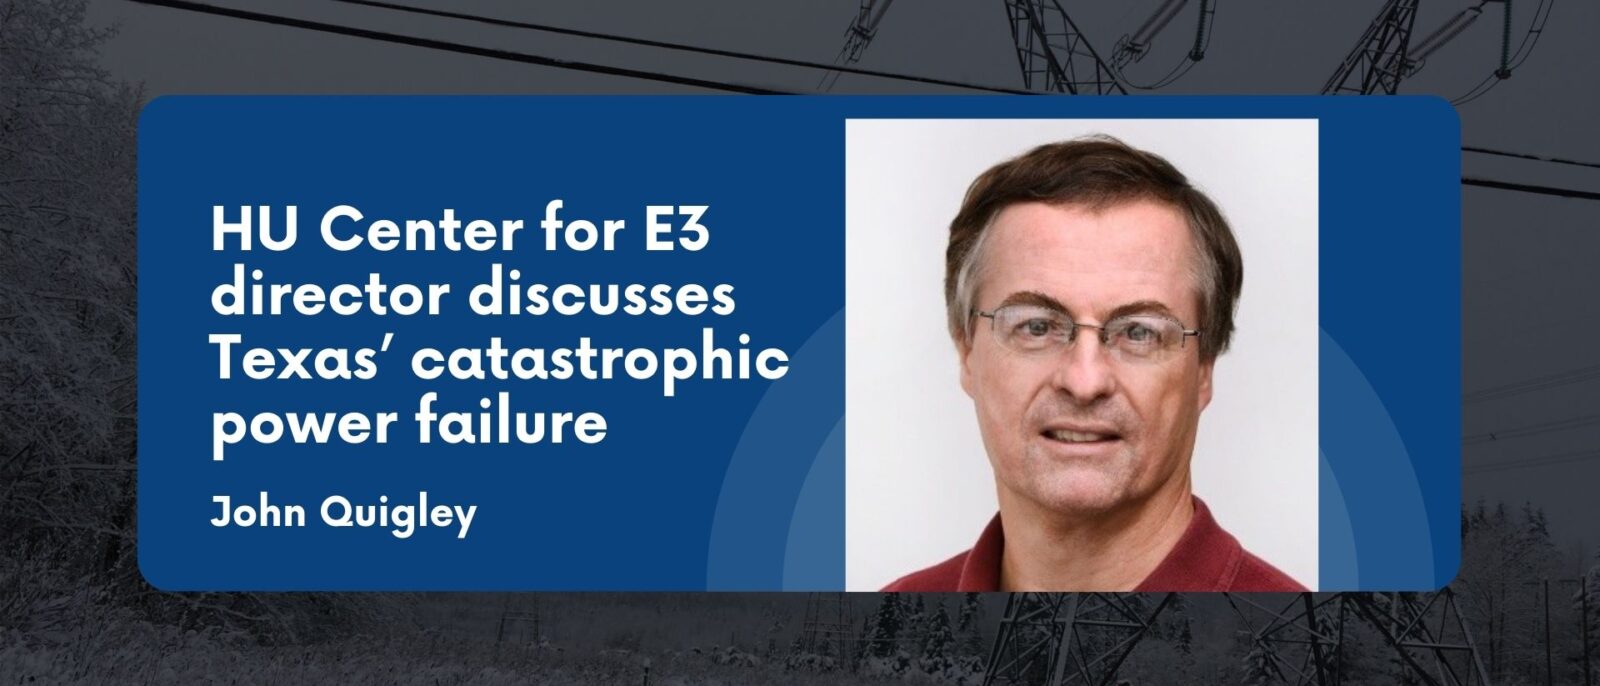 HU Center for E3 director discusses Texas’ catastrophic power failure